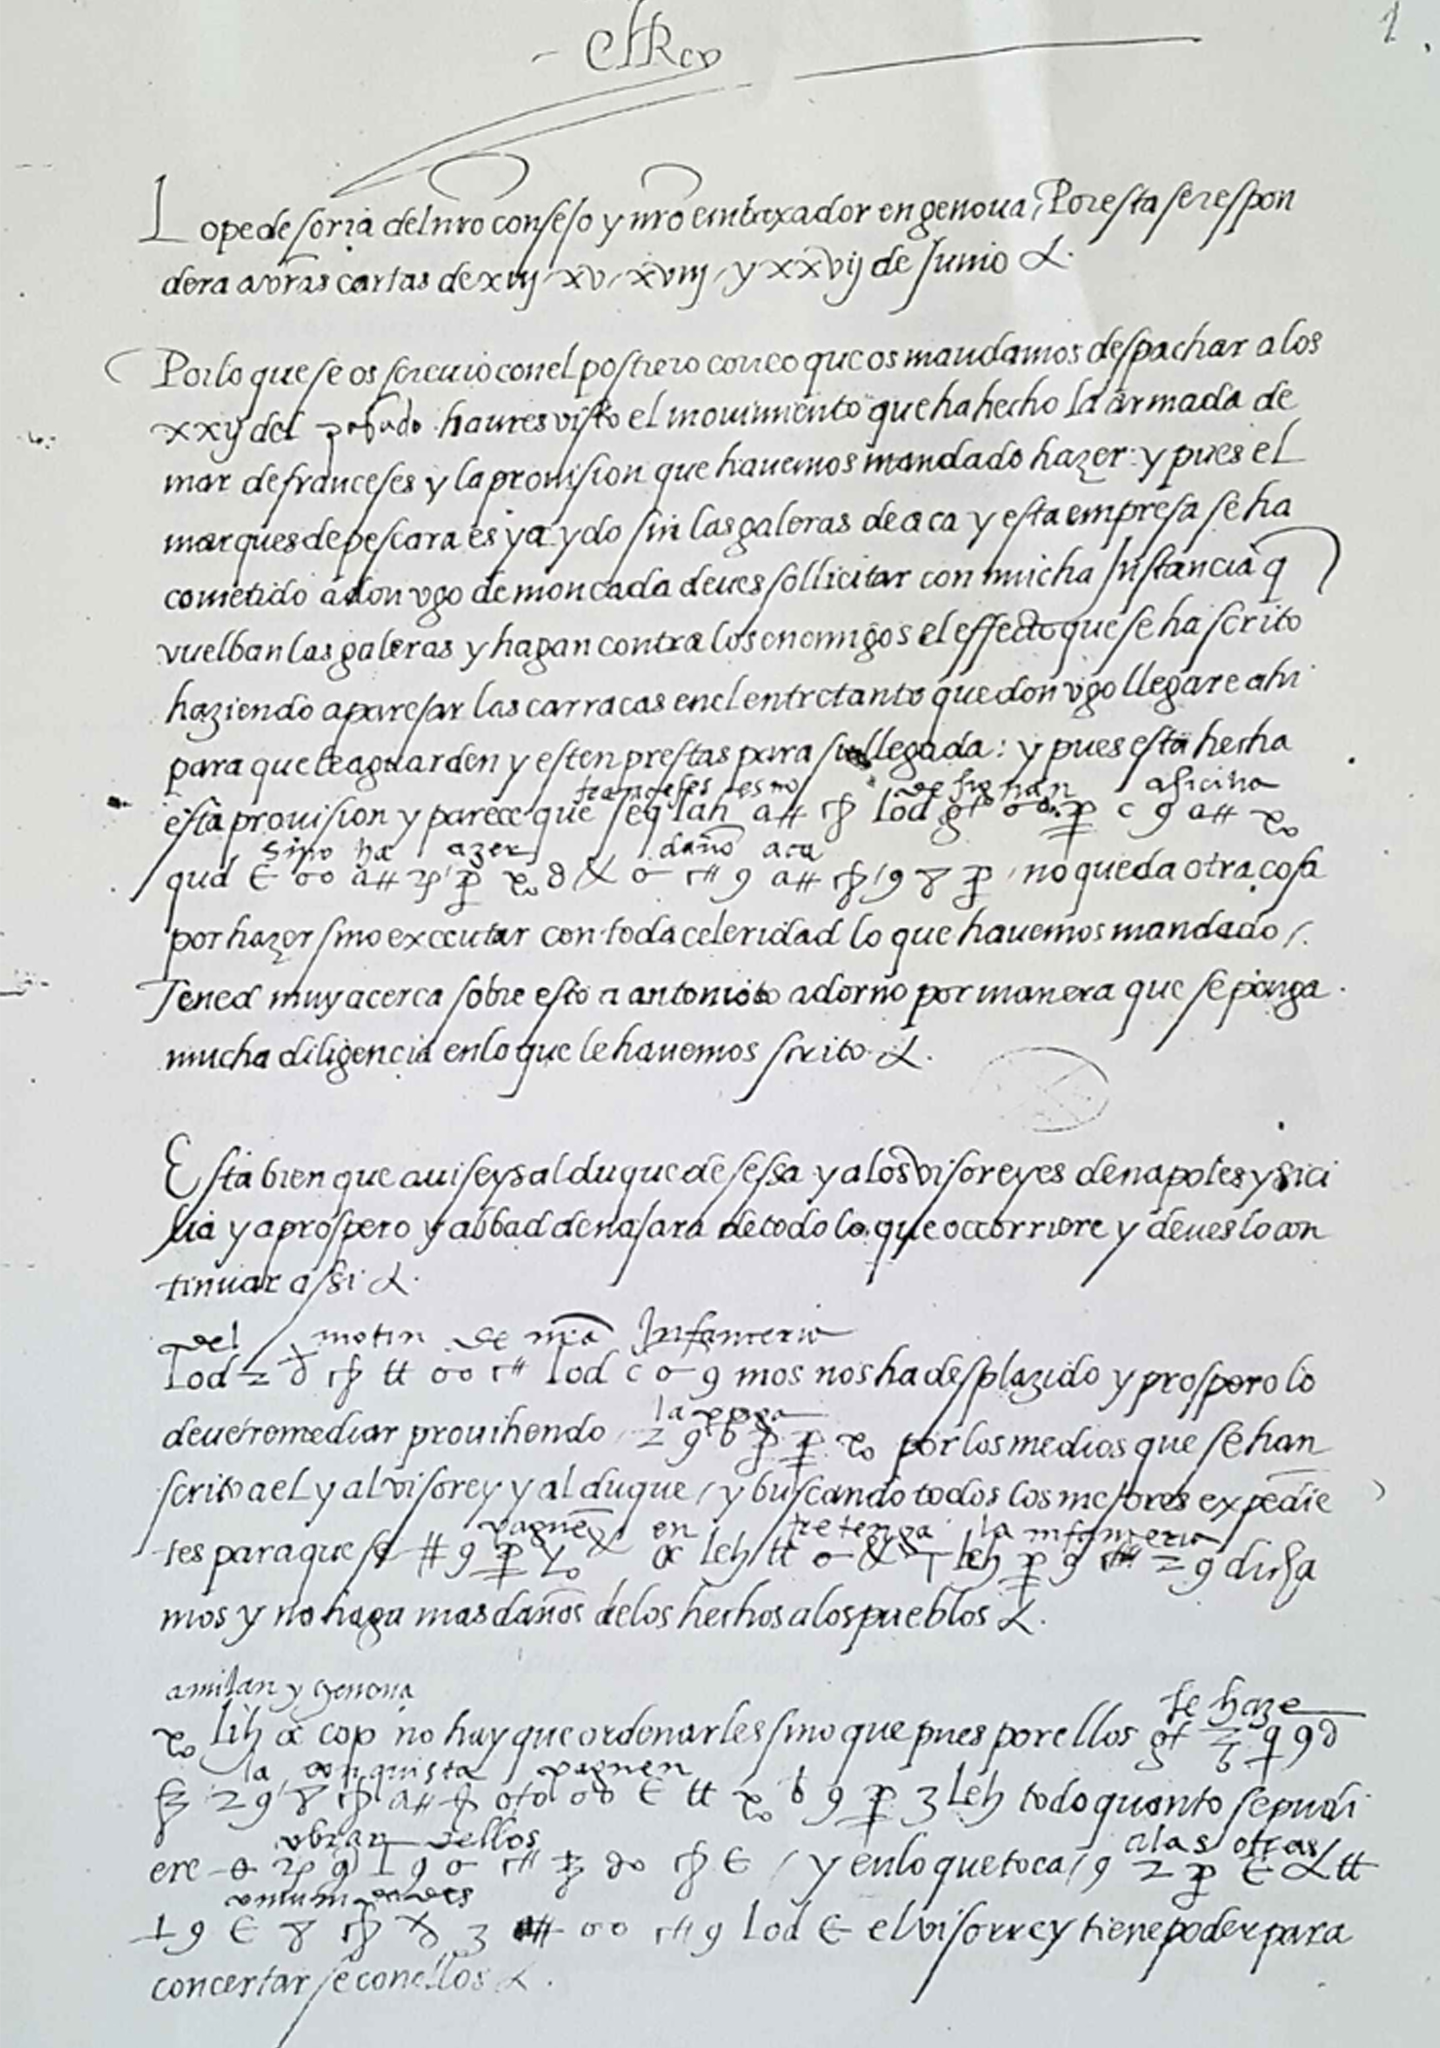 CARTA DE CARLOS V A LOPE DE SORIA, EMBAJADOR DE GÉNOVA (11-8-1523) - 1